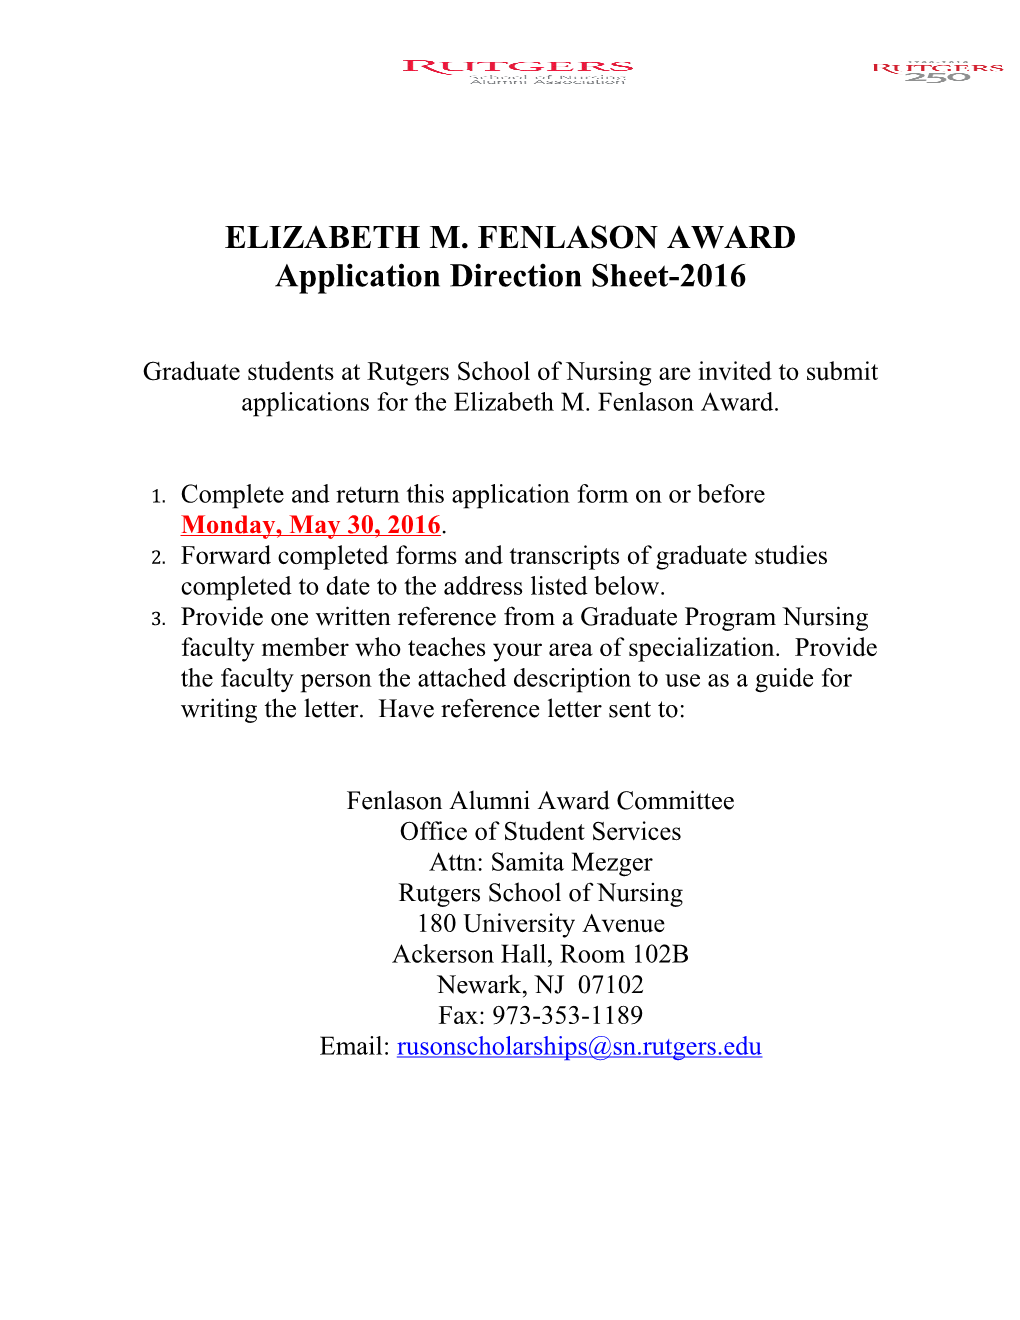 Elizabeth M. Fenlason Award